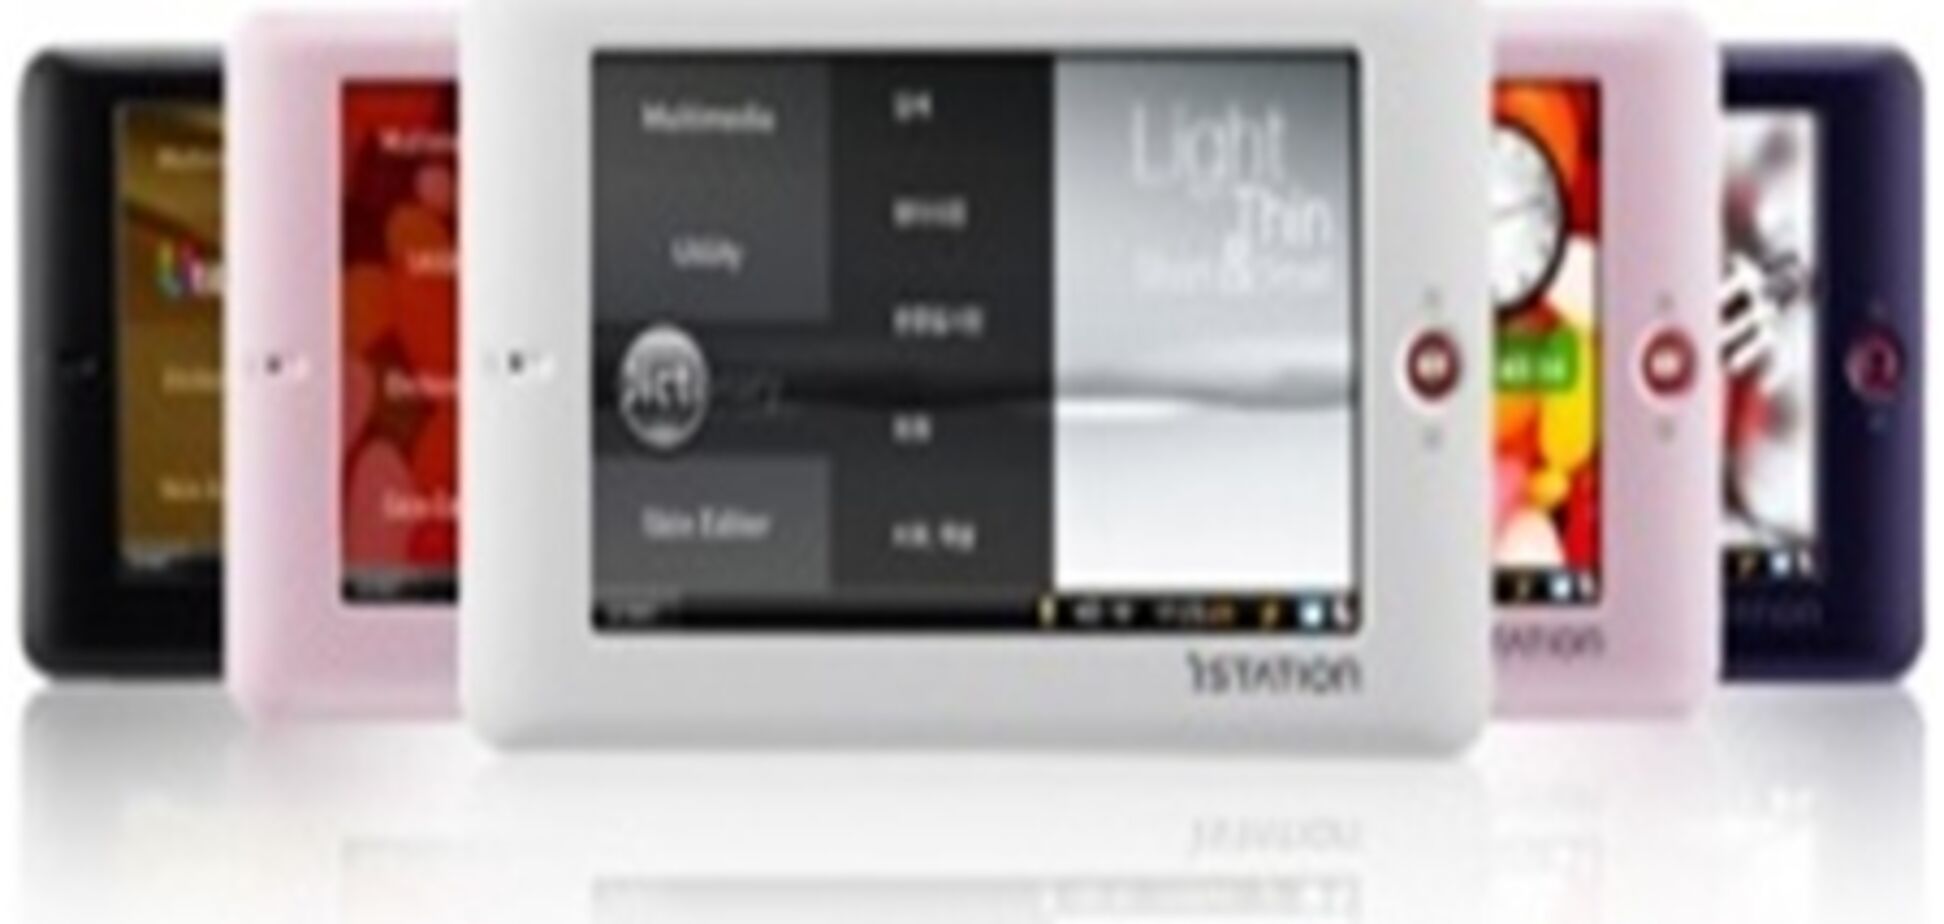 Компания iStation анонсировала  новый гаджет Т3: 'терминатор' среди медиаплееров